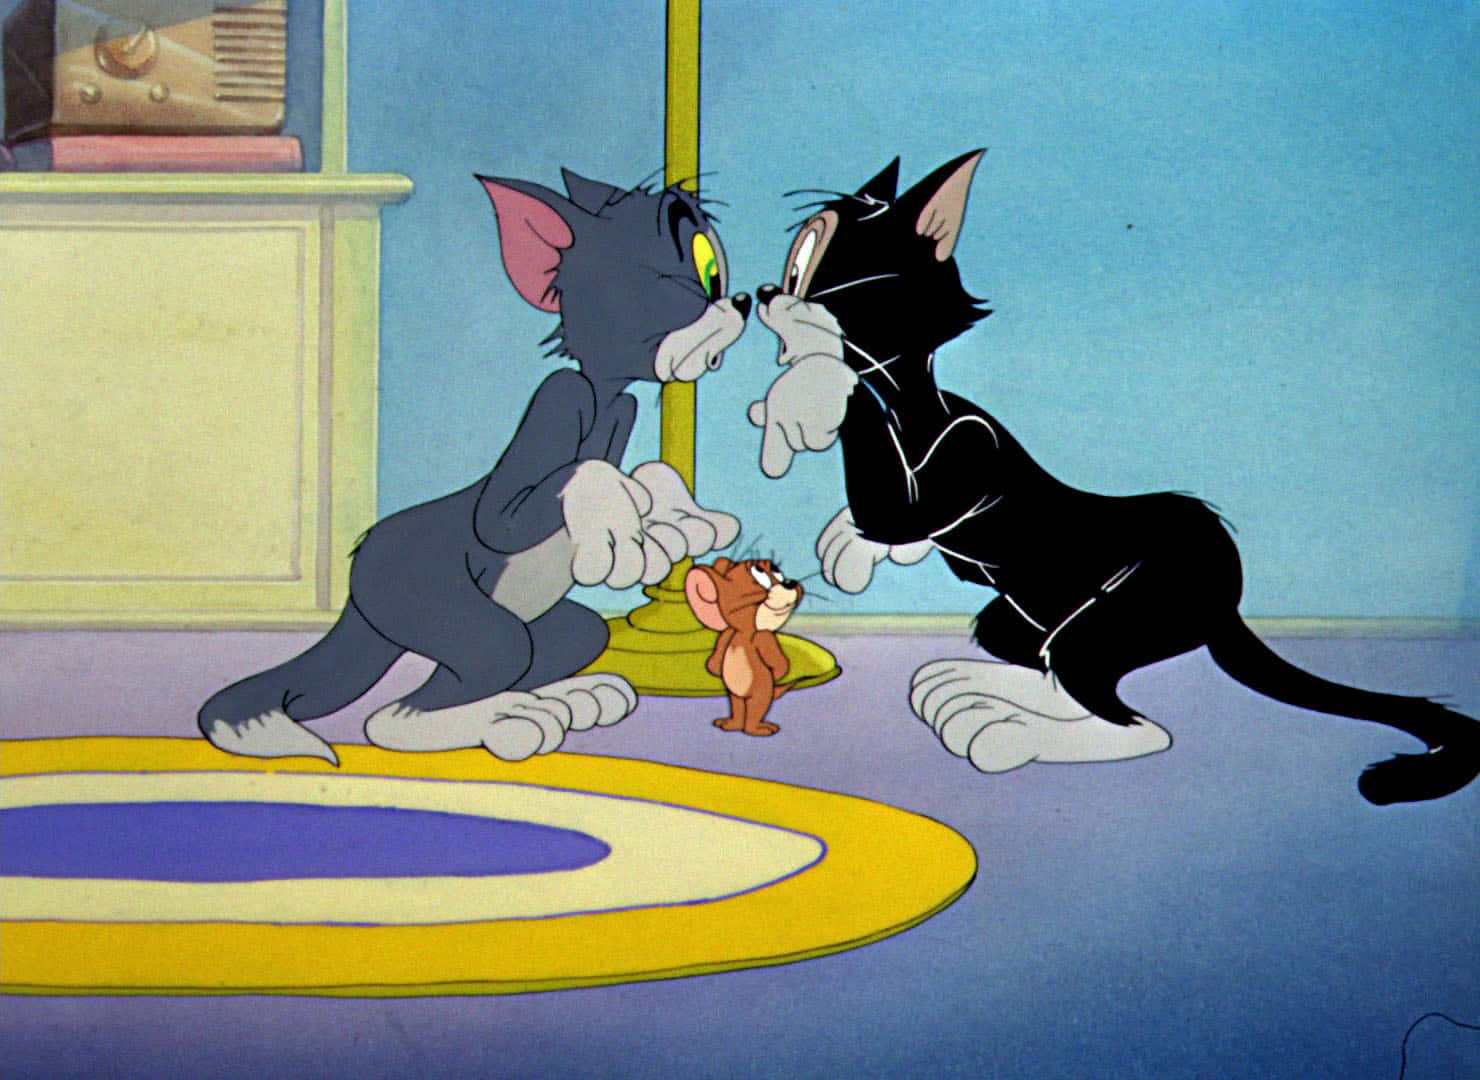 Tom og Jerry er altid ude på nogle sjove antik! Wallpaper